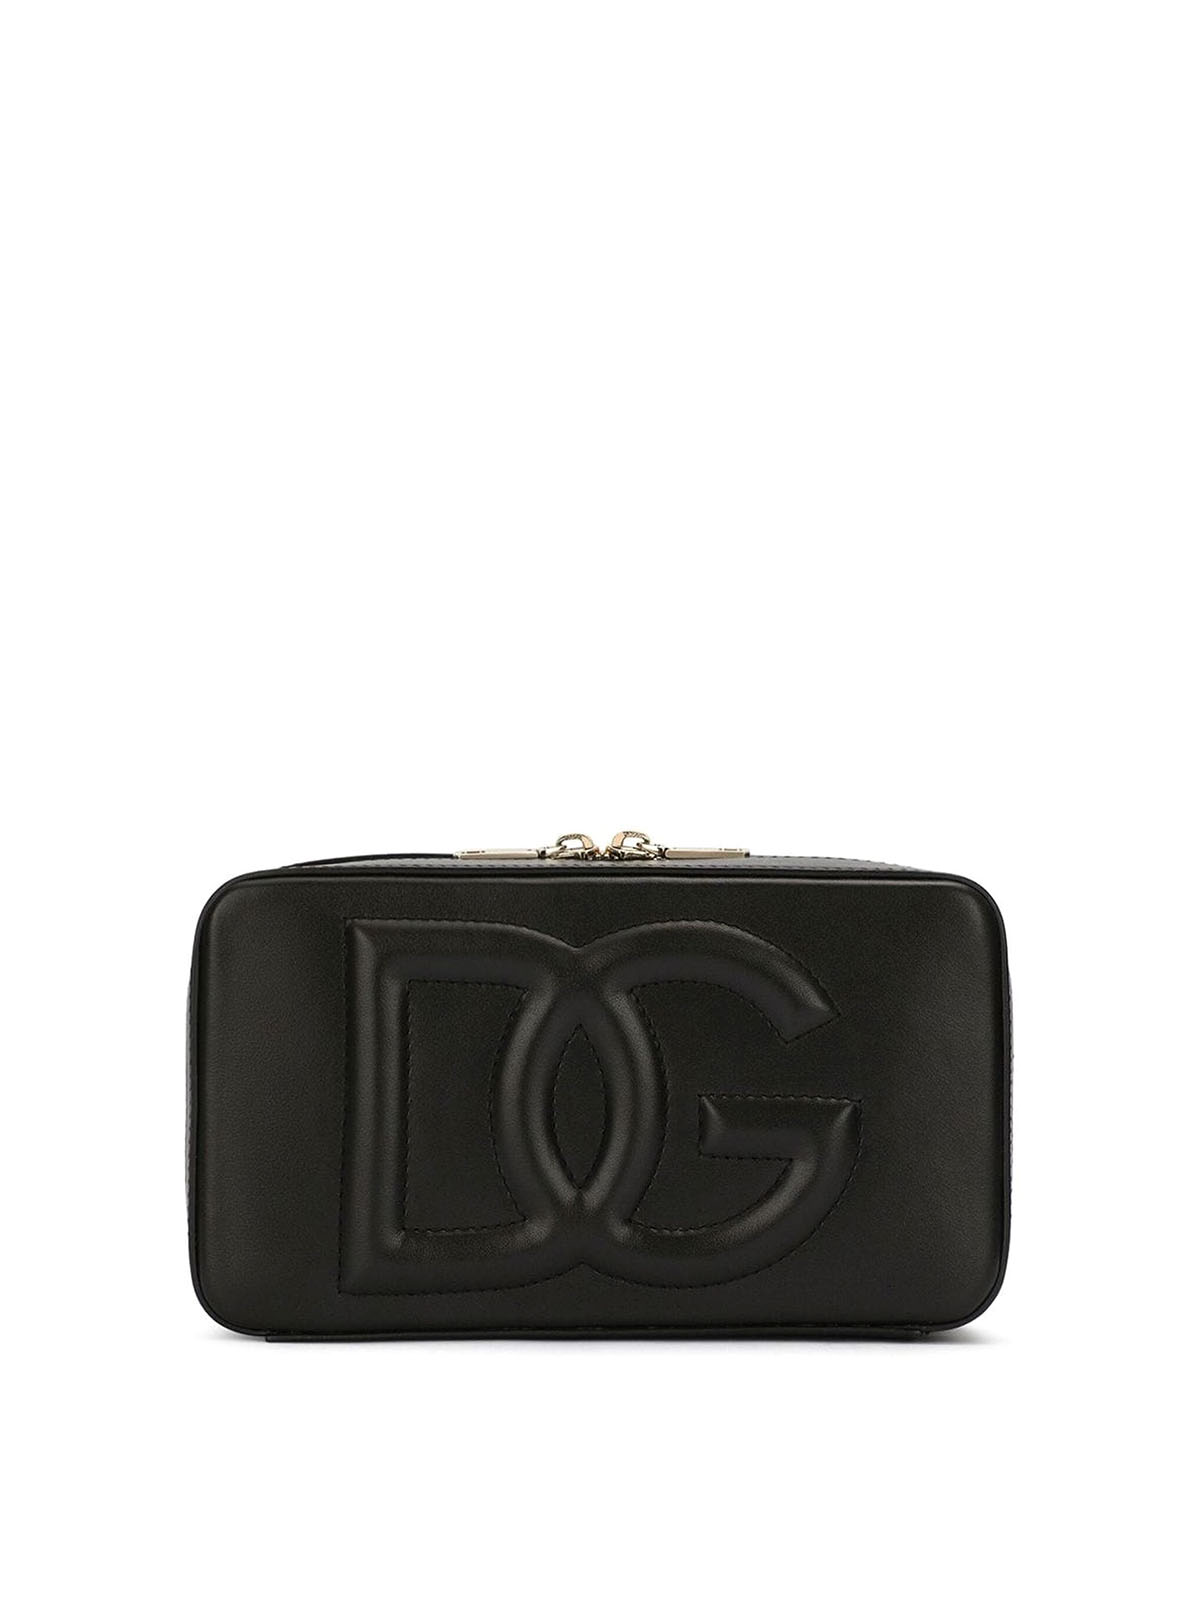 Dolce & Gabbana Leather Shoulder Bag In Negro